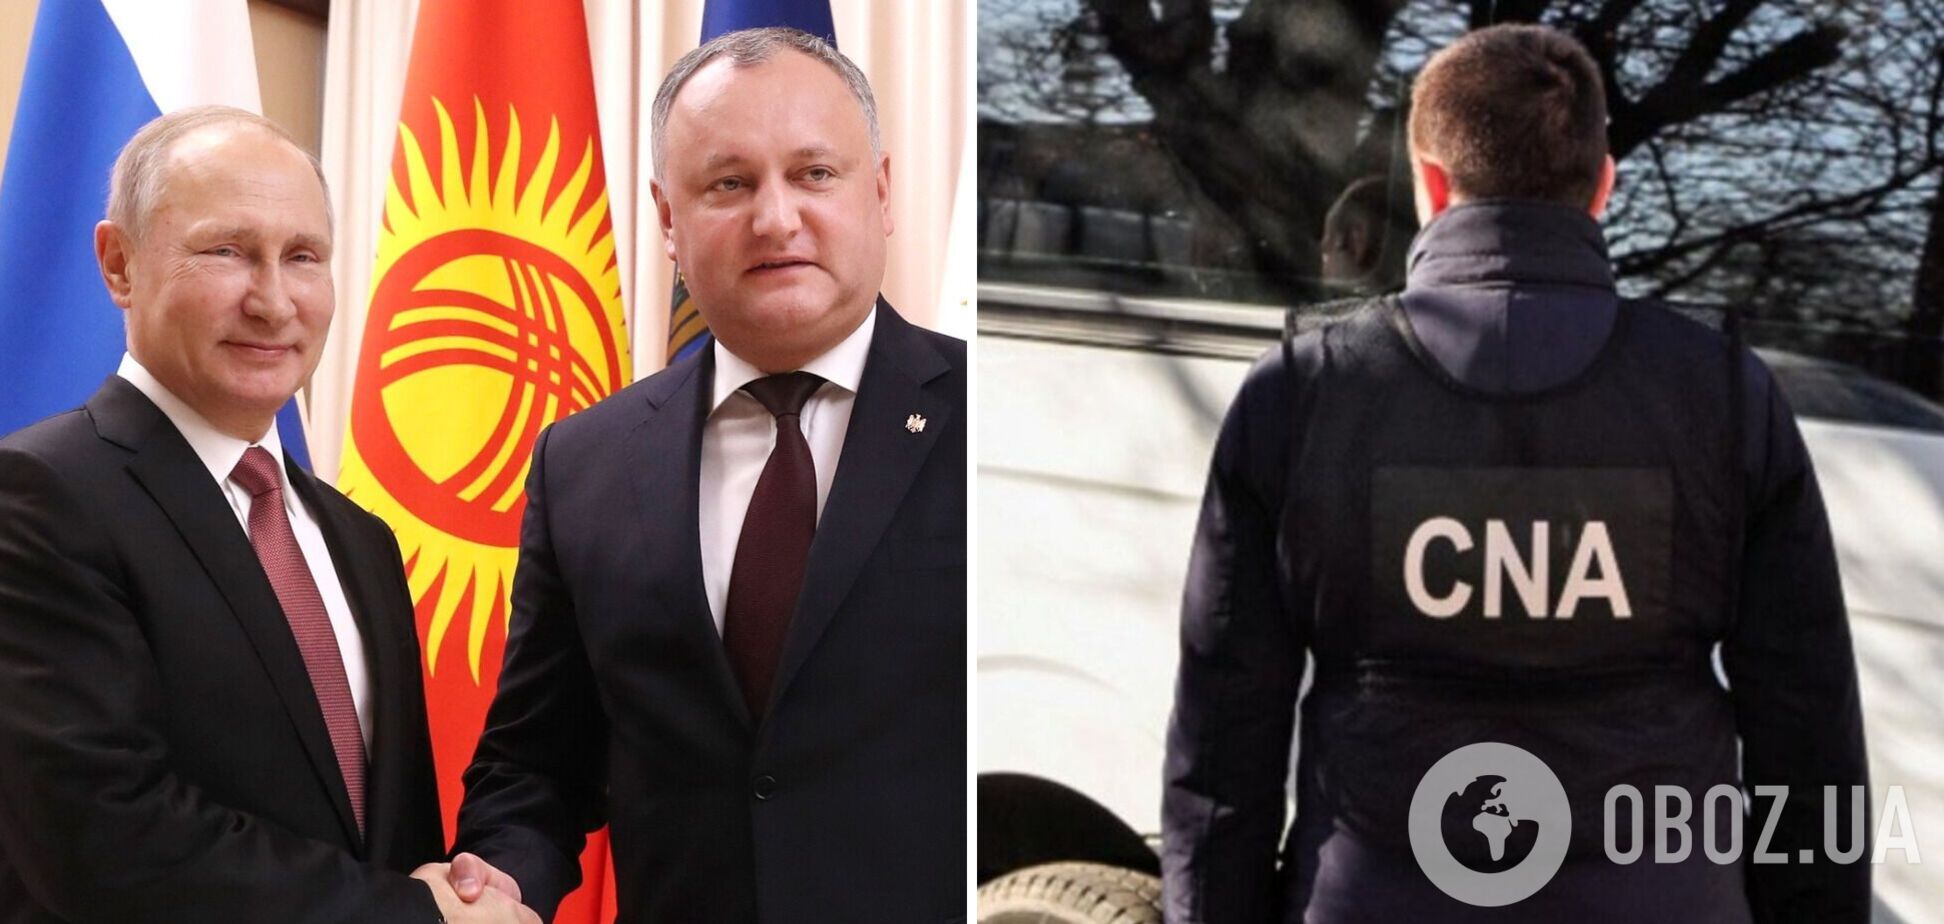 Экс-президента Молдовы, который отметился дружбой с Путиным, заподозрили в госизмене